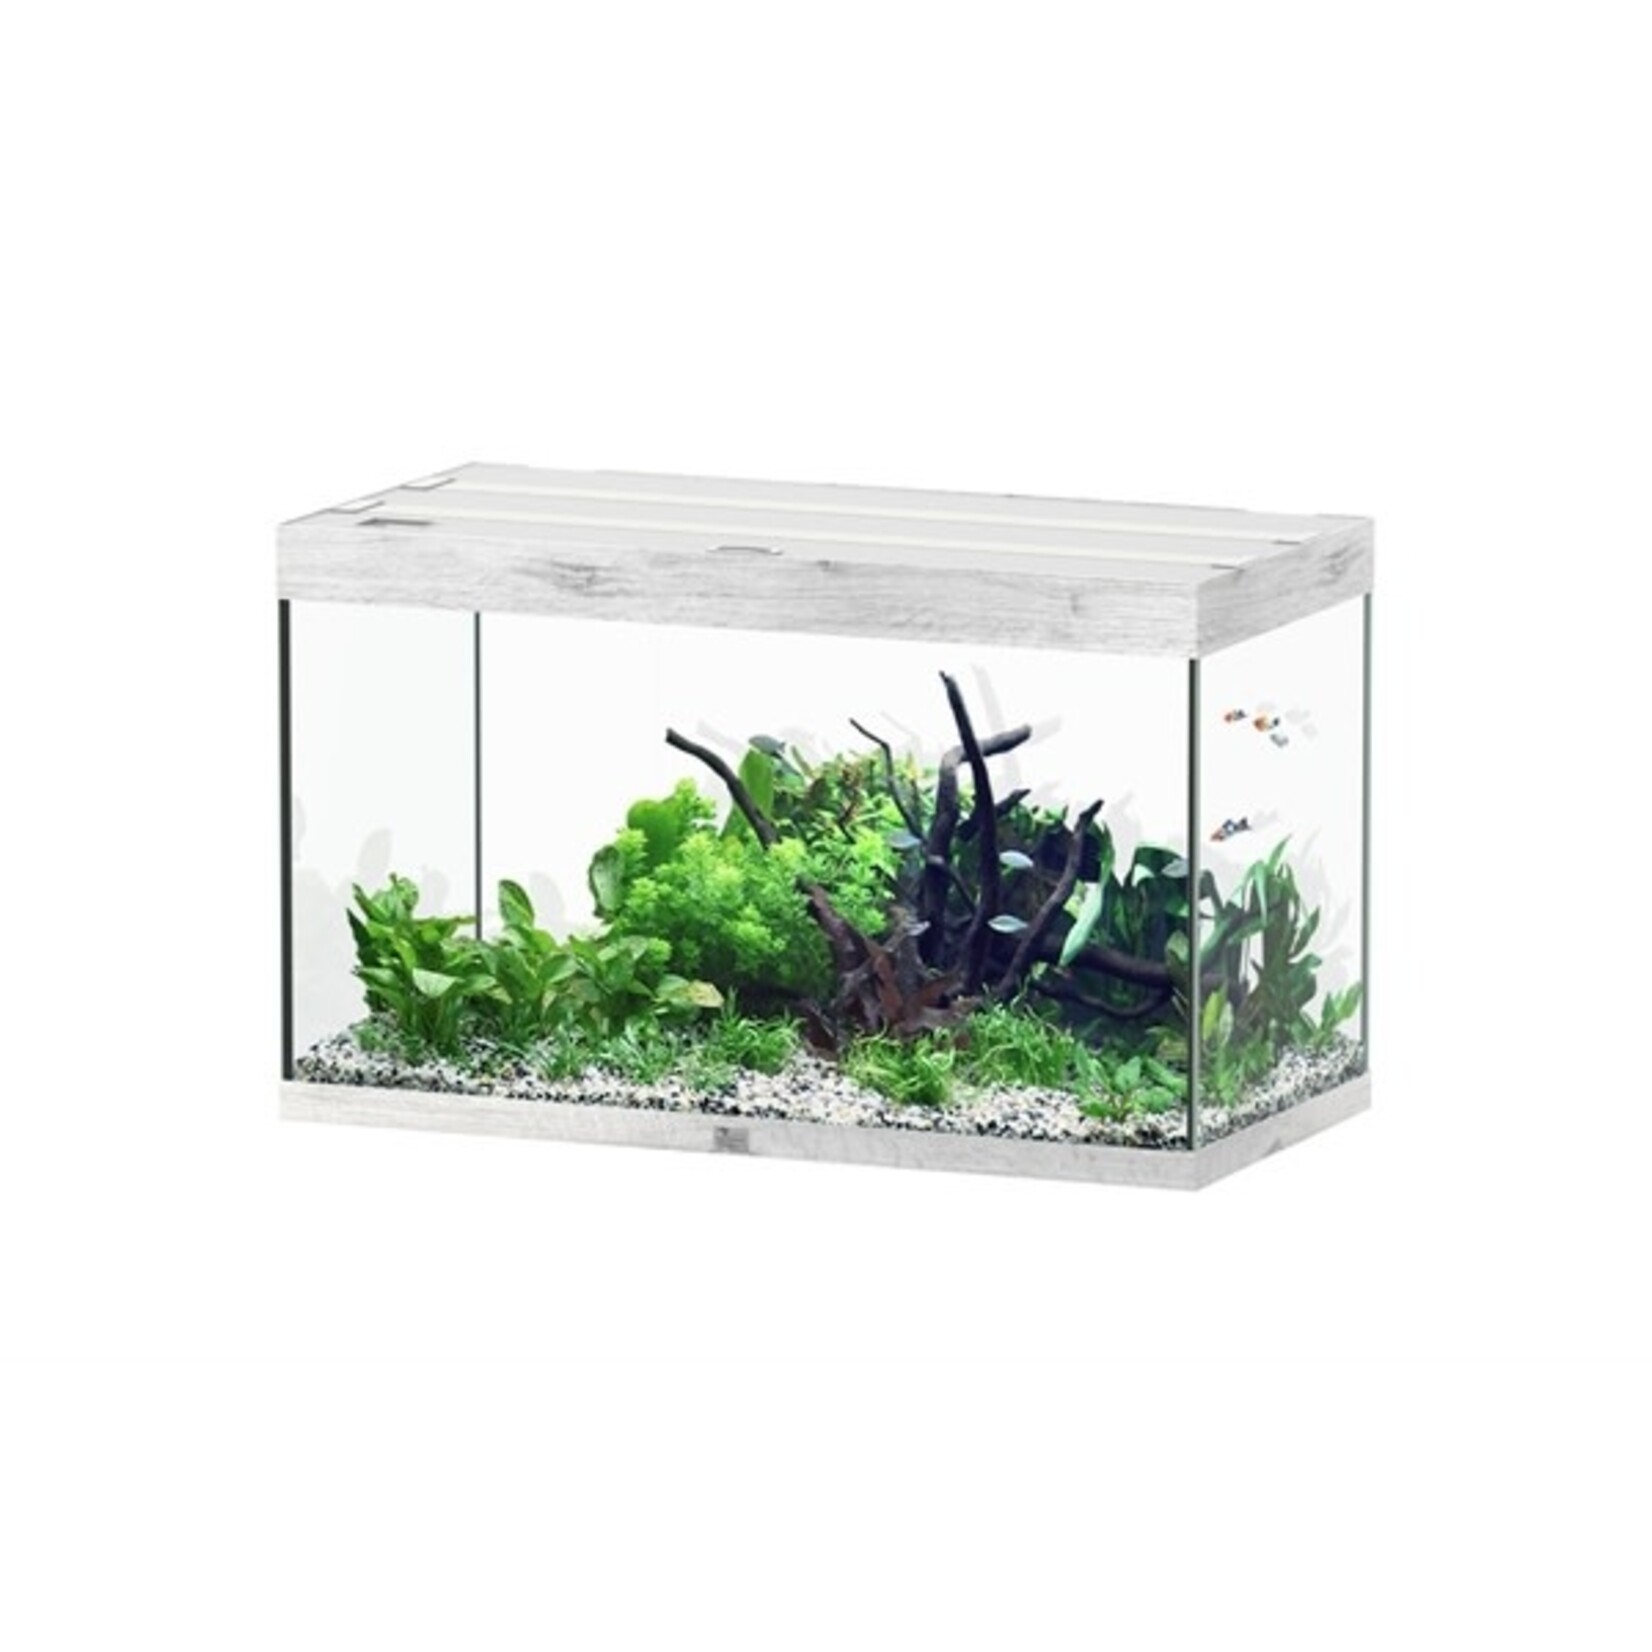 Aquatlantis Aquarium sublime 100x50 cm whitewash-088